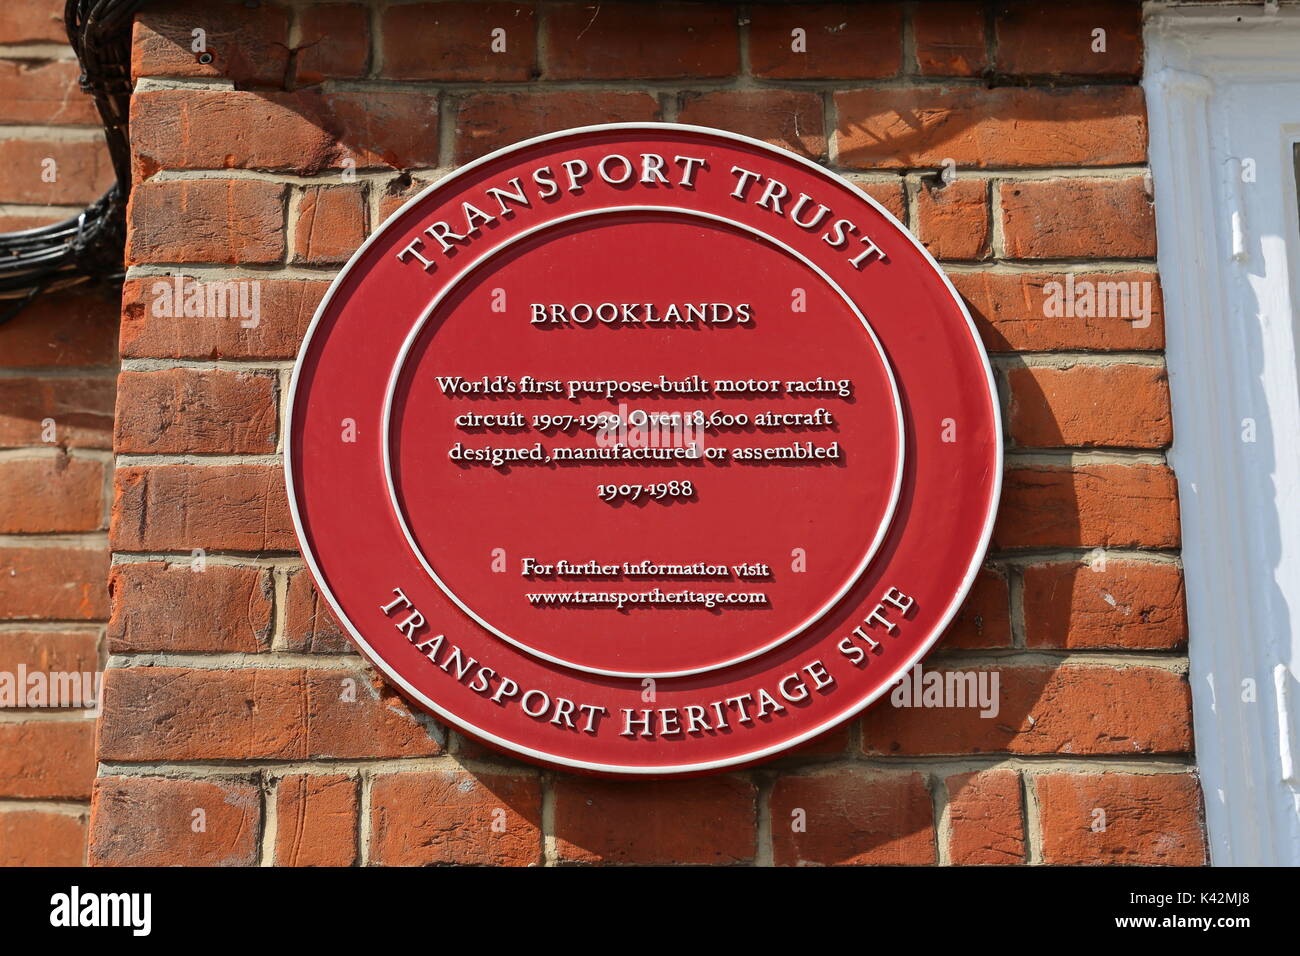 Site du patrimoine Transport plaque, club-house, Musée de Brooklands, Weybridge, Surrey, Angleterre, Grande-Bretagne, Royaume-Uni, UK, Europe Banque D'Images